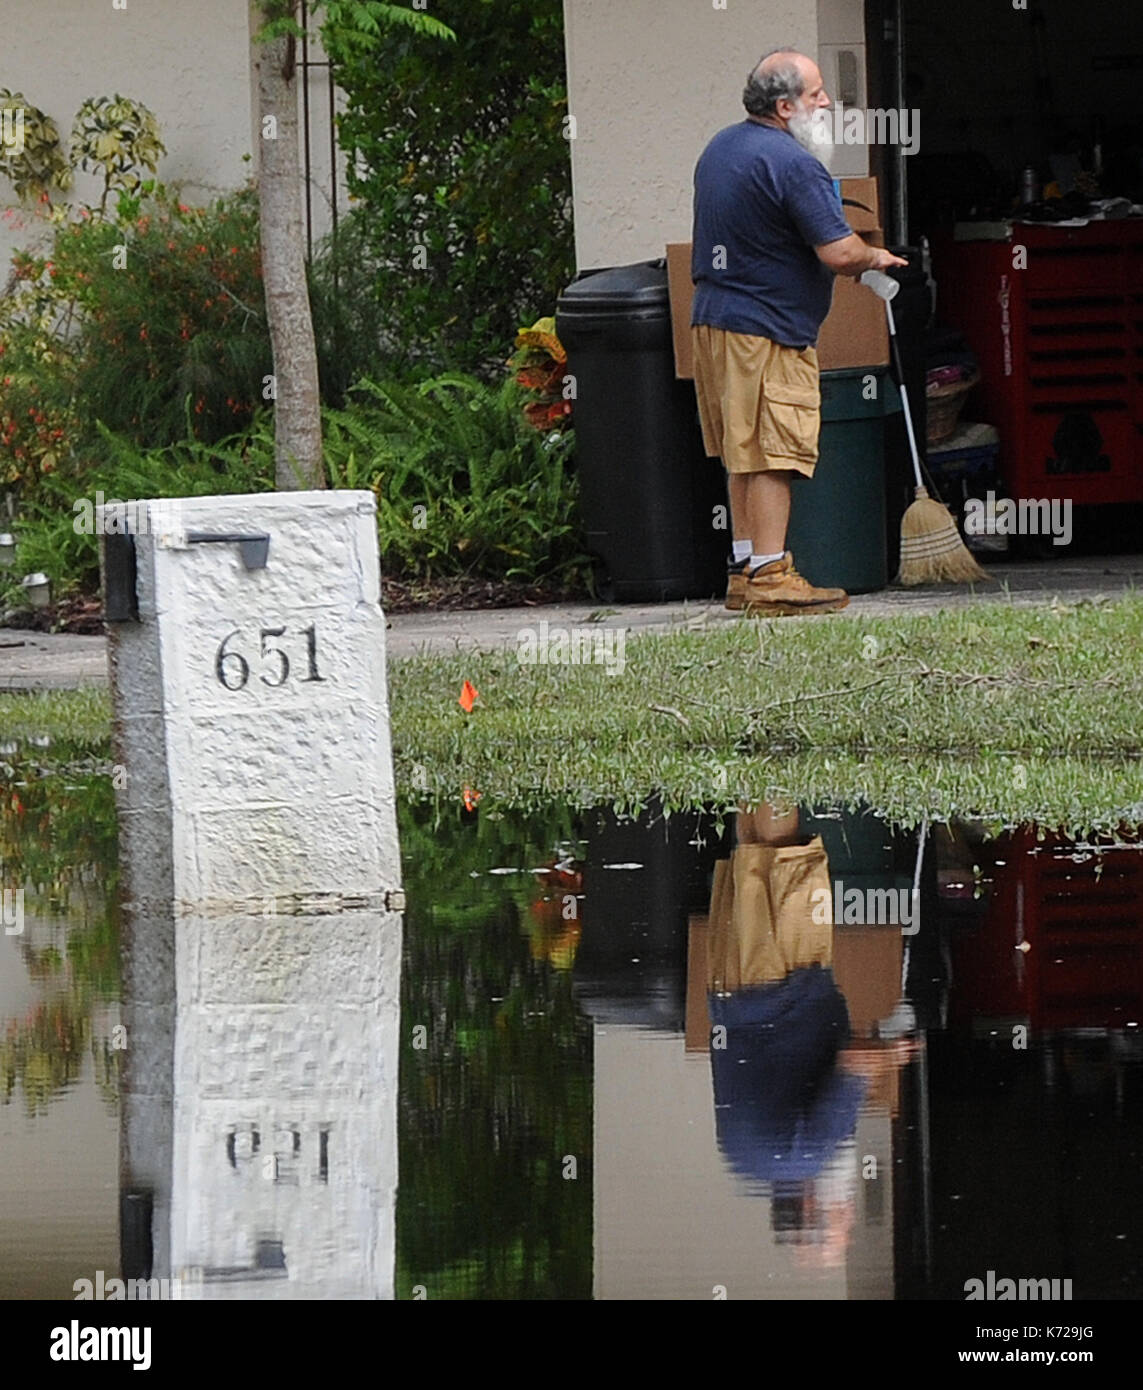 Altamonte Springs, États-Unis. Sep 14, 2017 14 septembre, 2017.- d'Altamonte Springs, Floride, États-Unis - un homme et sa boîte aux lettres sont vue reflétée dans les eaux de crue dans la rue dans le quartier des chênes de printemps d'Altamonte Springs, en Floride le 14 septembre 2017. Les travailleurs d'urgence neufs et les camions de sauver plus de 50 résidents, le 11 septembre 2017, lorsque l'eau de la petite rivière à proximité wekiva inondé leurs foyers à la suite de l'ouragan irma. crédit : Paul Hennessy/Alamy live news Banque D'Images